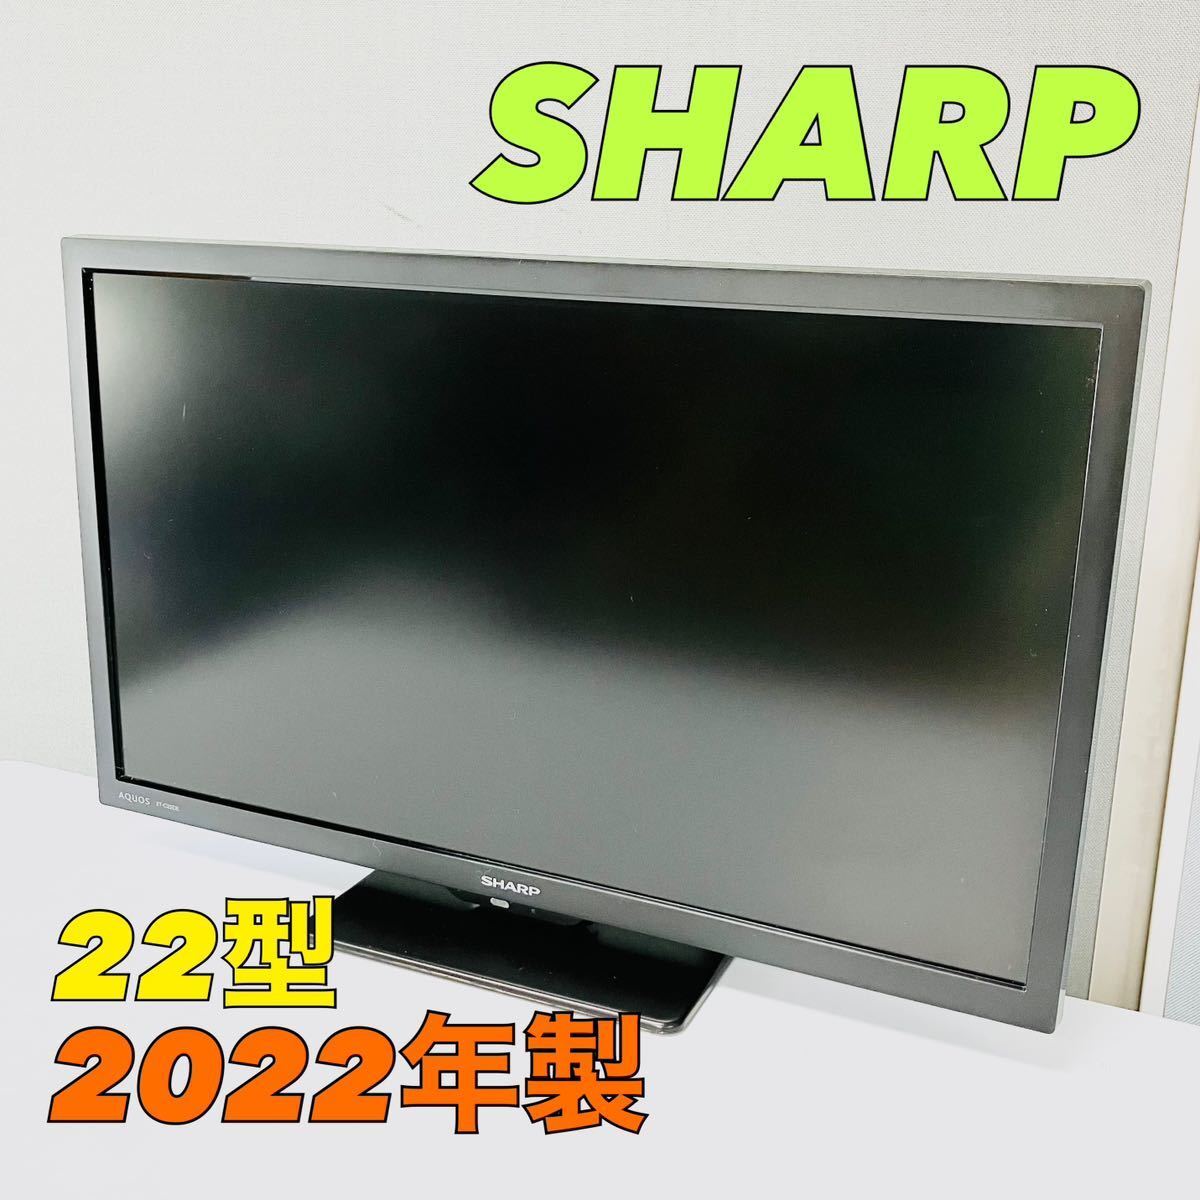 中古美品:シャープAQUOS22型フルハイビジョン液晶テレビ2T-C22DE-B 取説,元箱付き2022年製の画像1